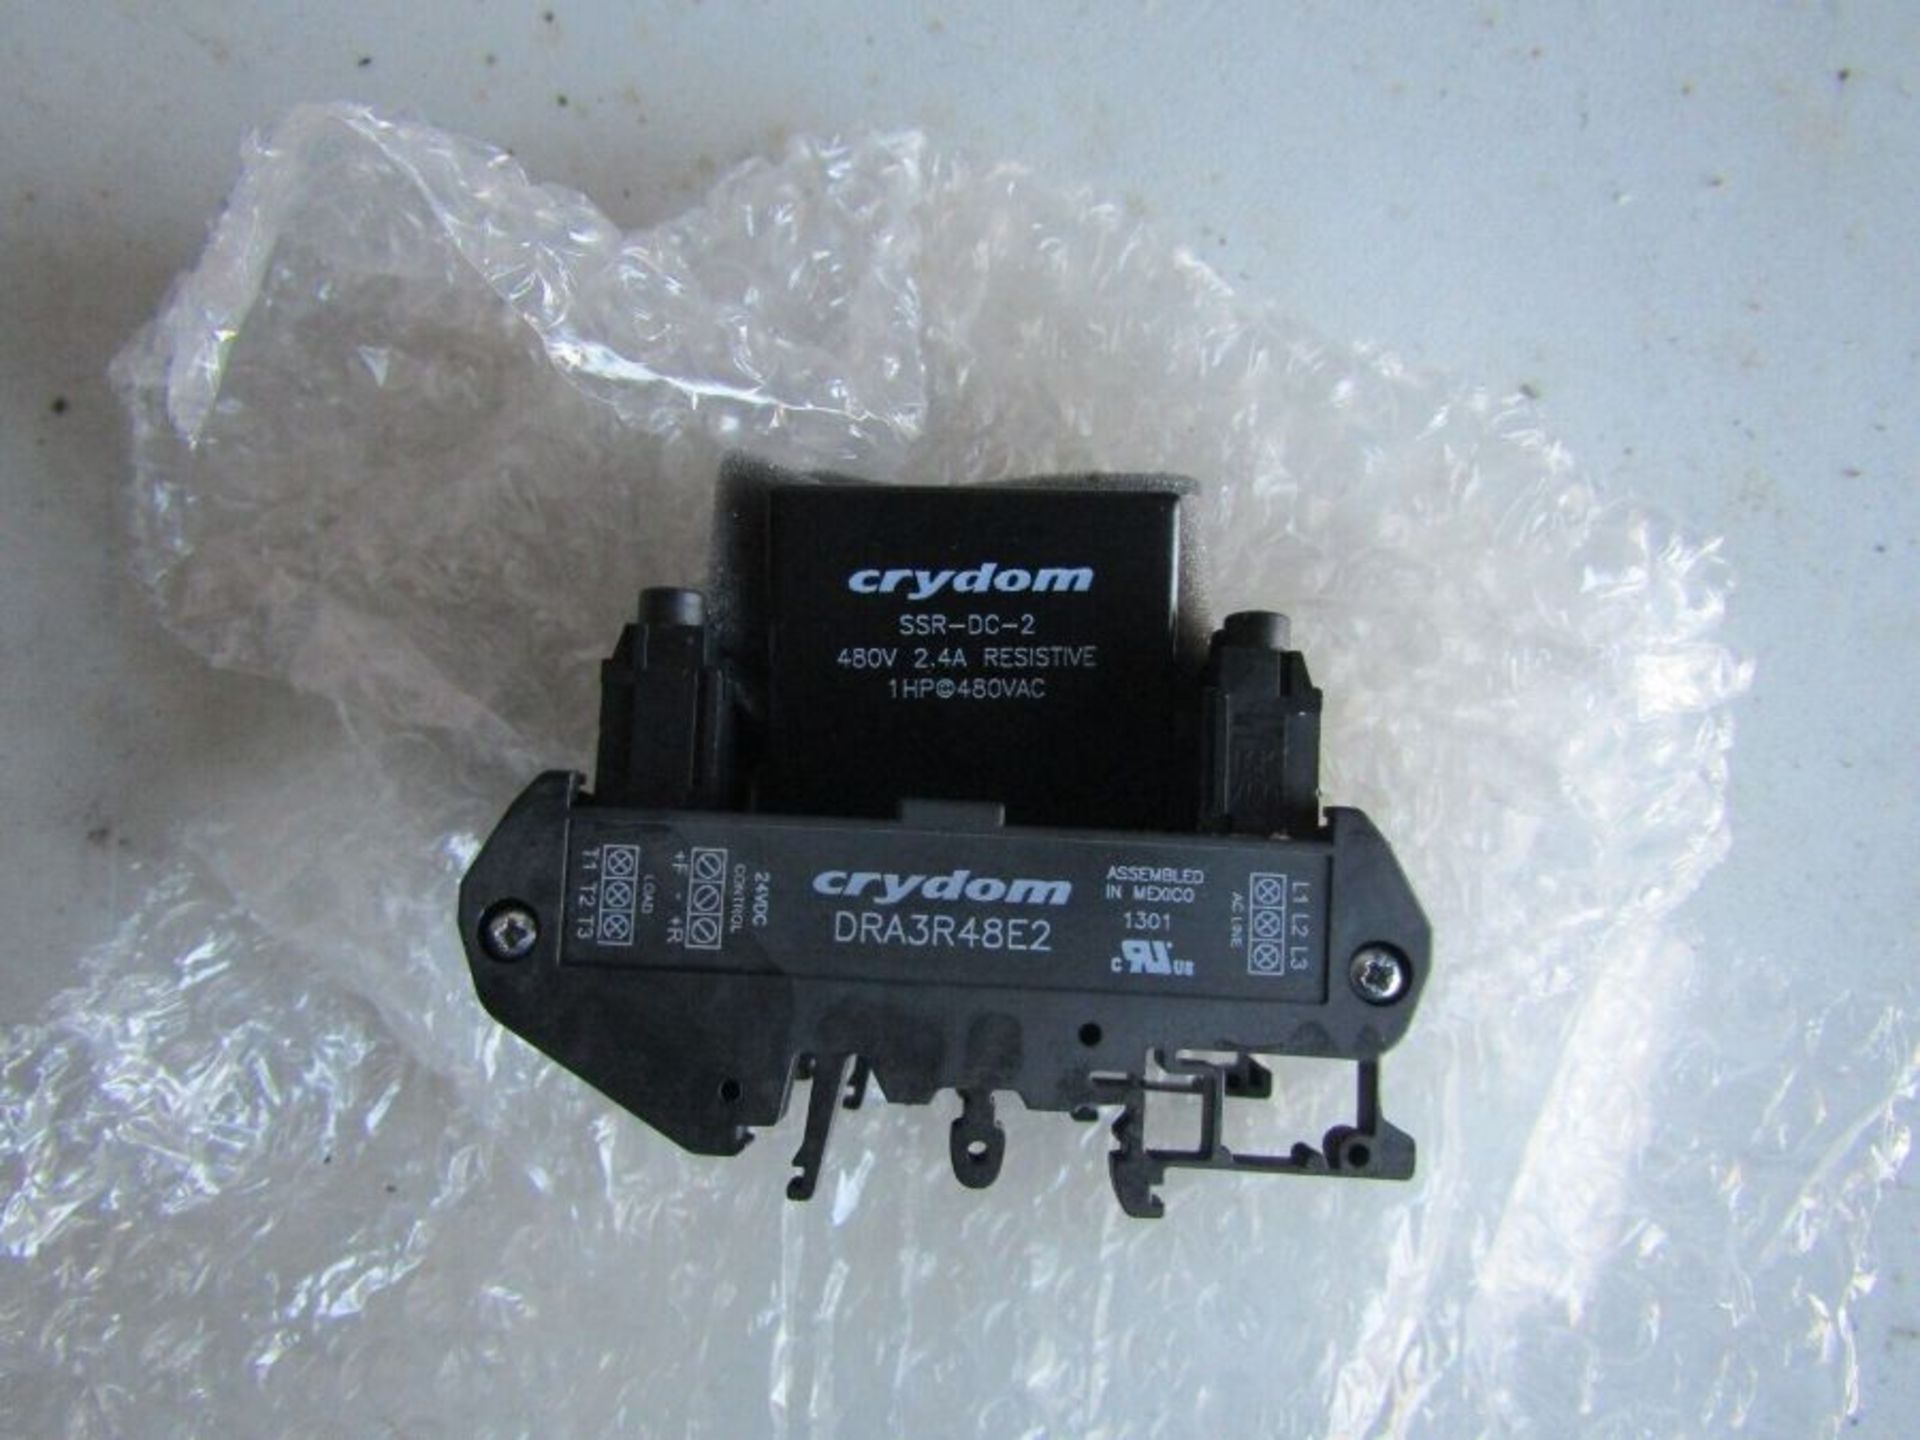 6 x CST - Crydom SSR(Contactor)3Pole,Rev,2A,480VAC/24VDC H7FL 7710678